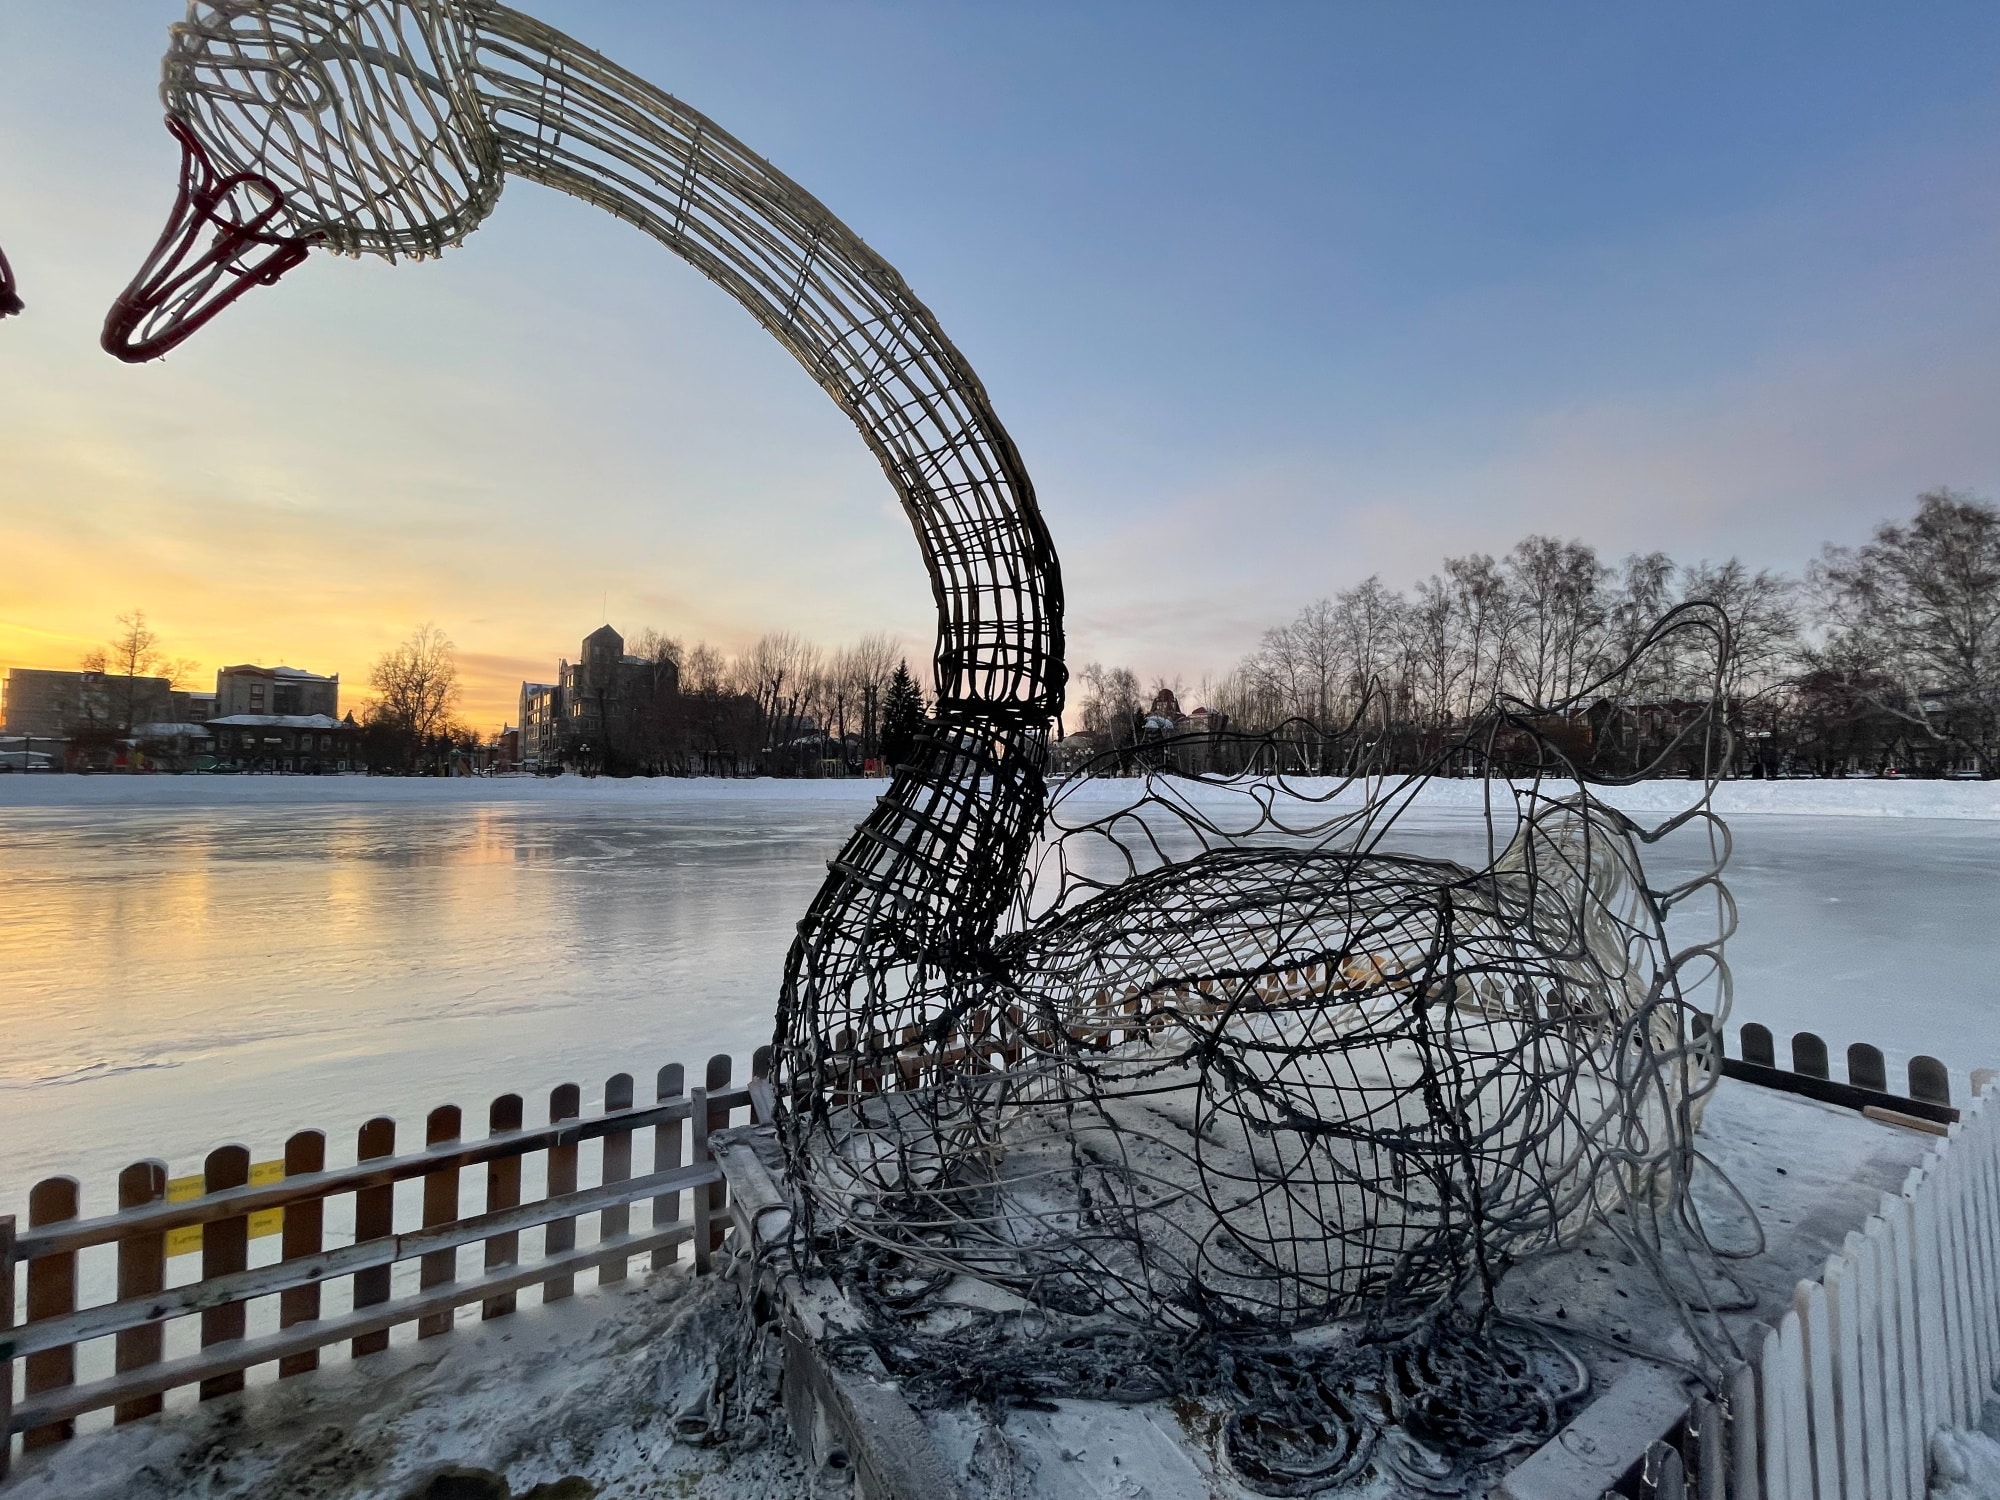 Происшествия, Томские новости, лебеди пожар огонь сводка происшествий сгорели пострадали Скульптура лебедей сгорела на Белом озере в Томске